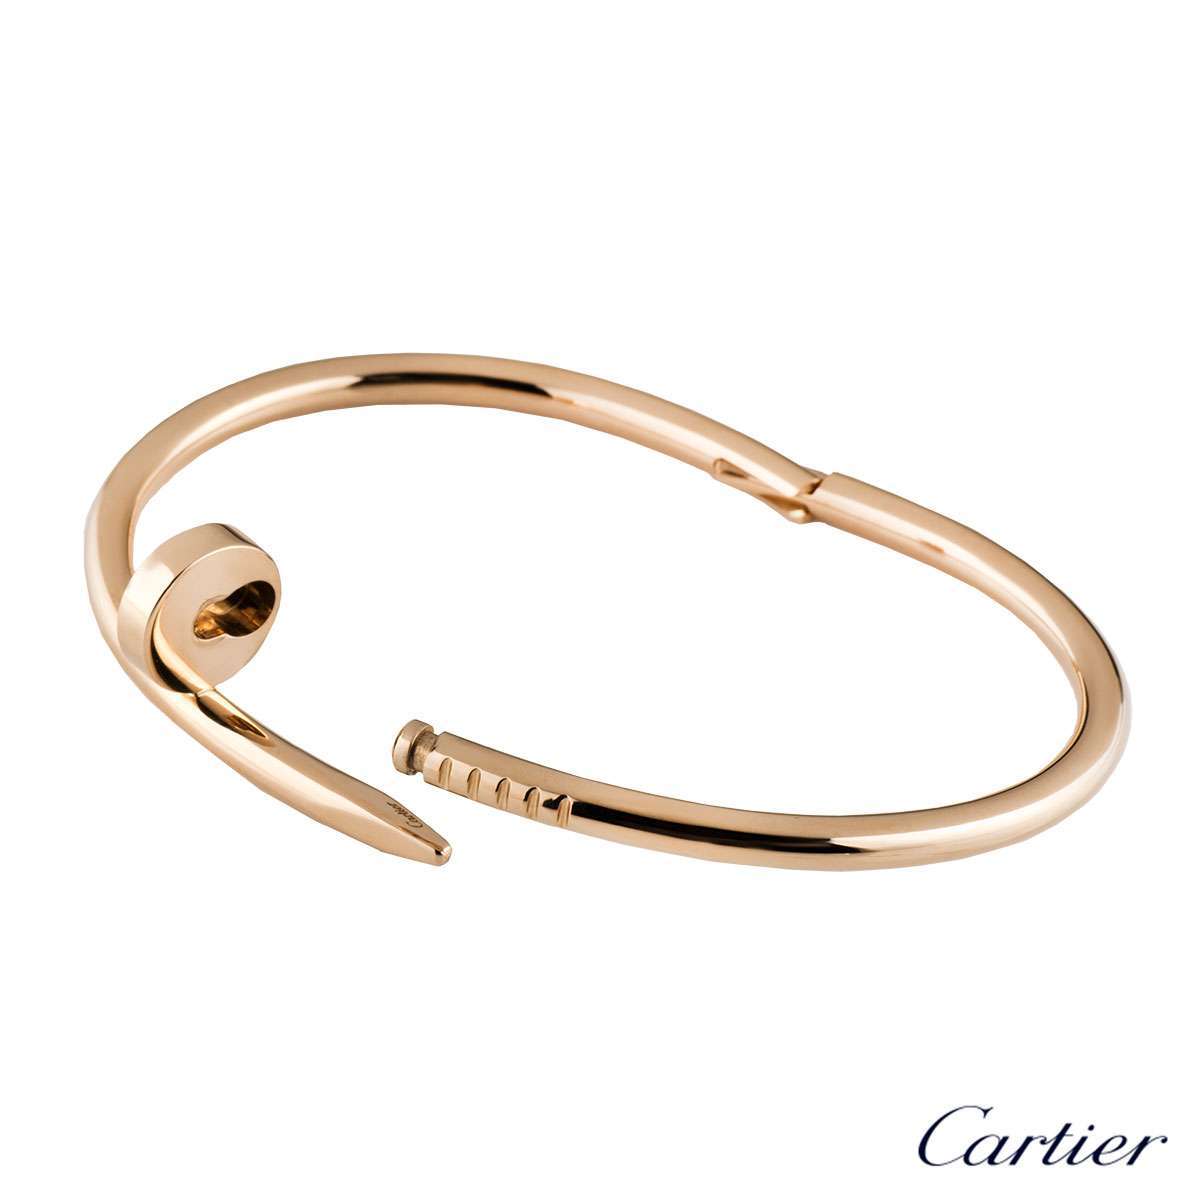 cartier clasp bracelet